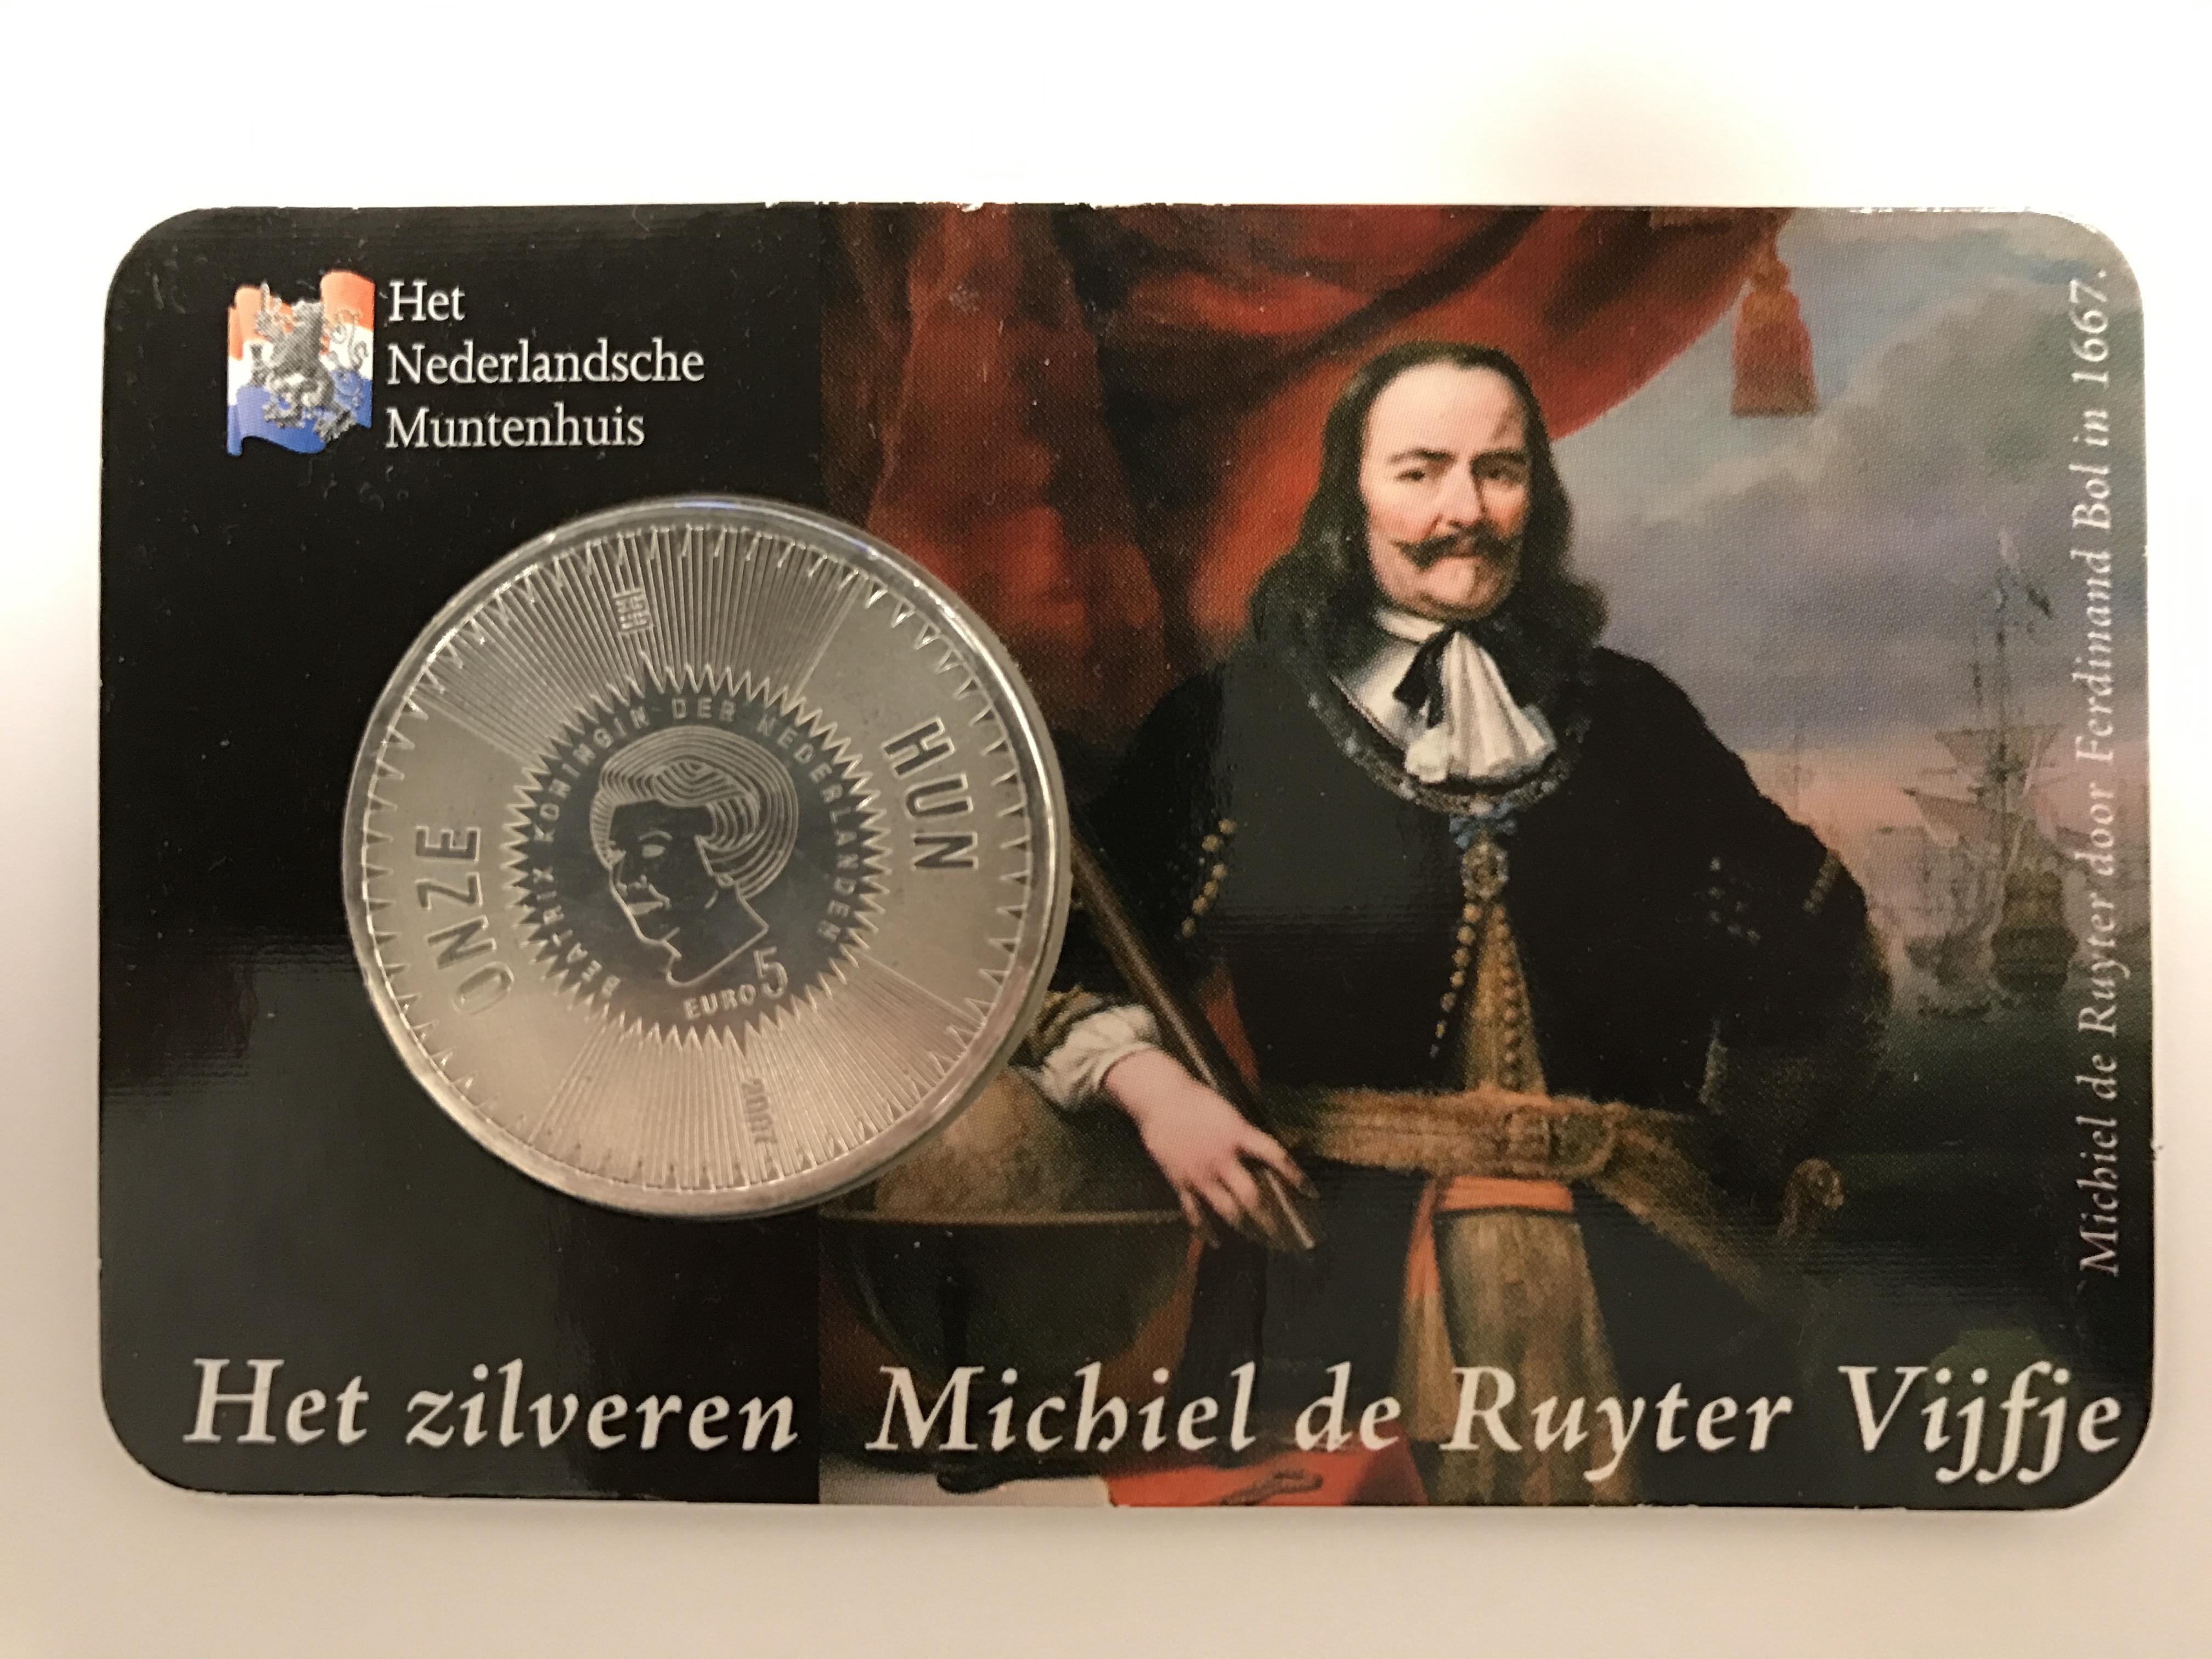 De Ruyter Vijfje 2007 coincard HNM